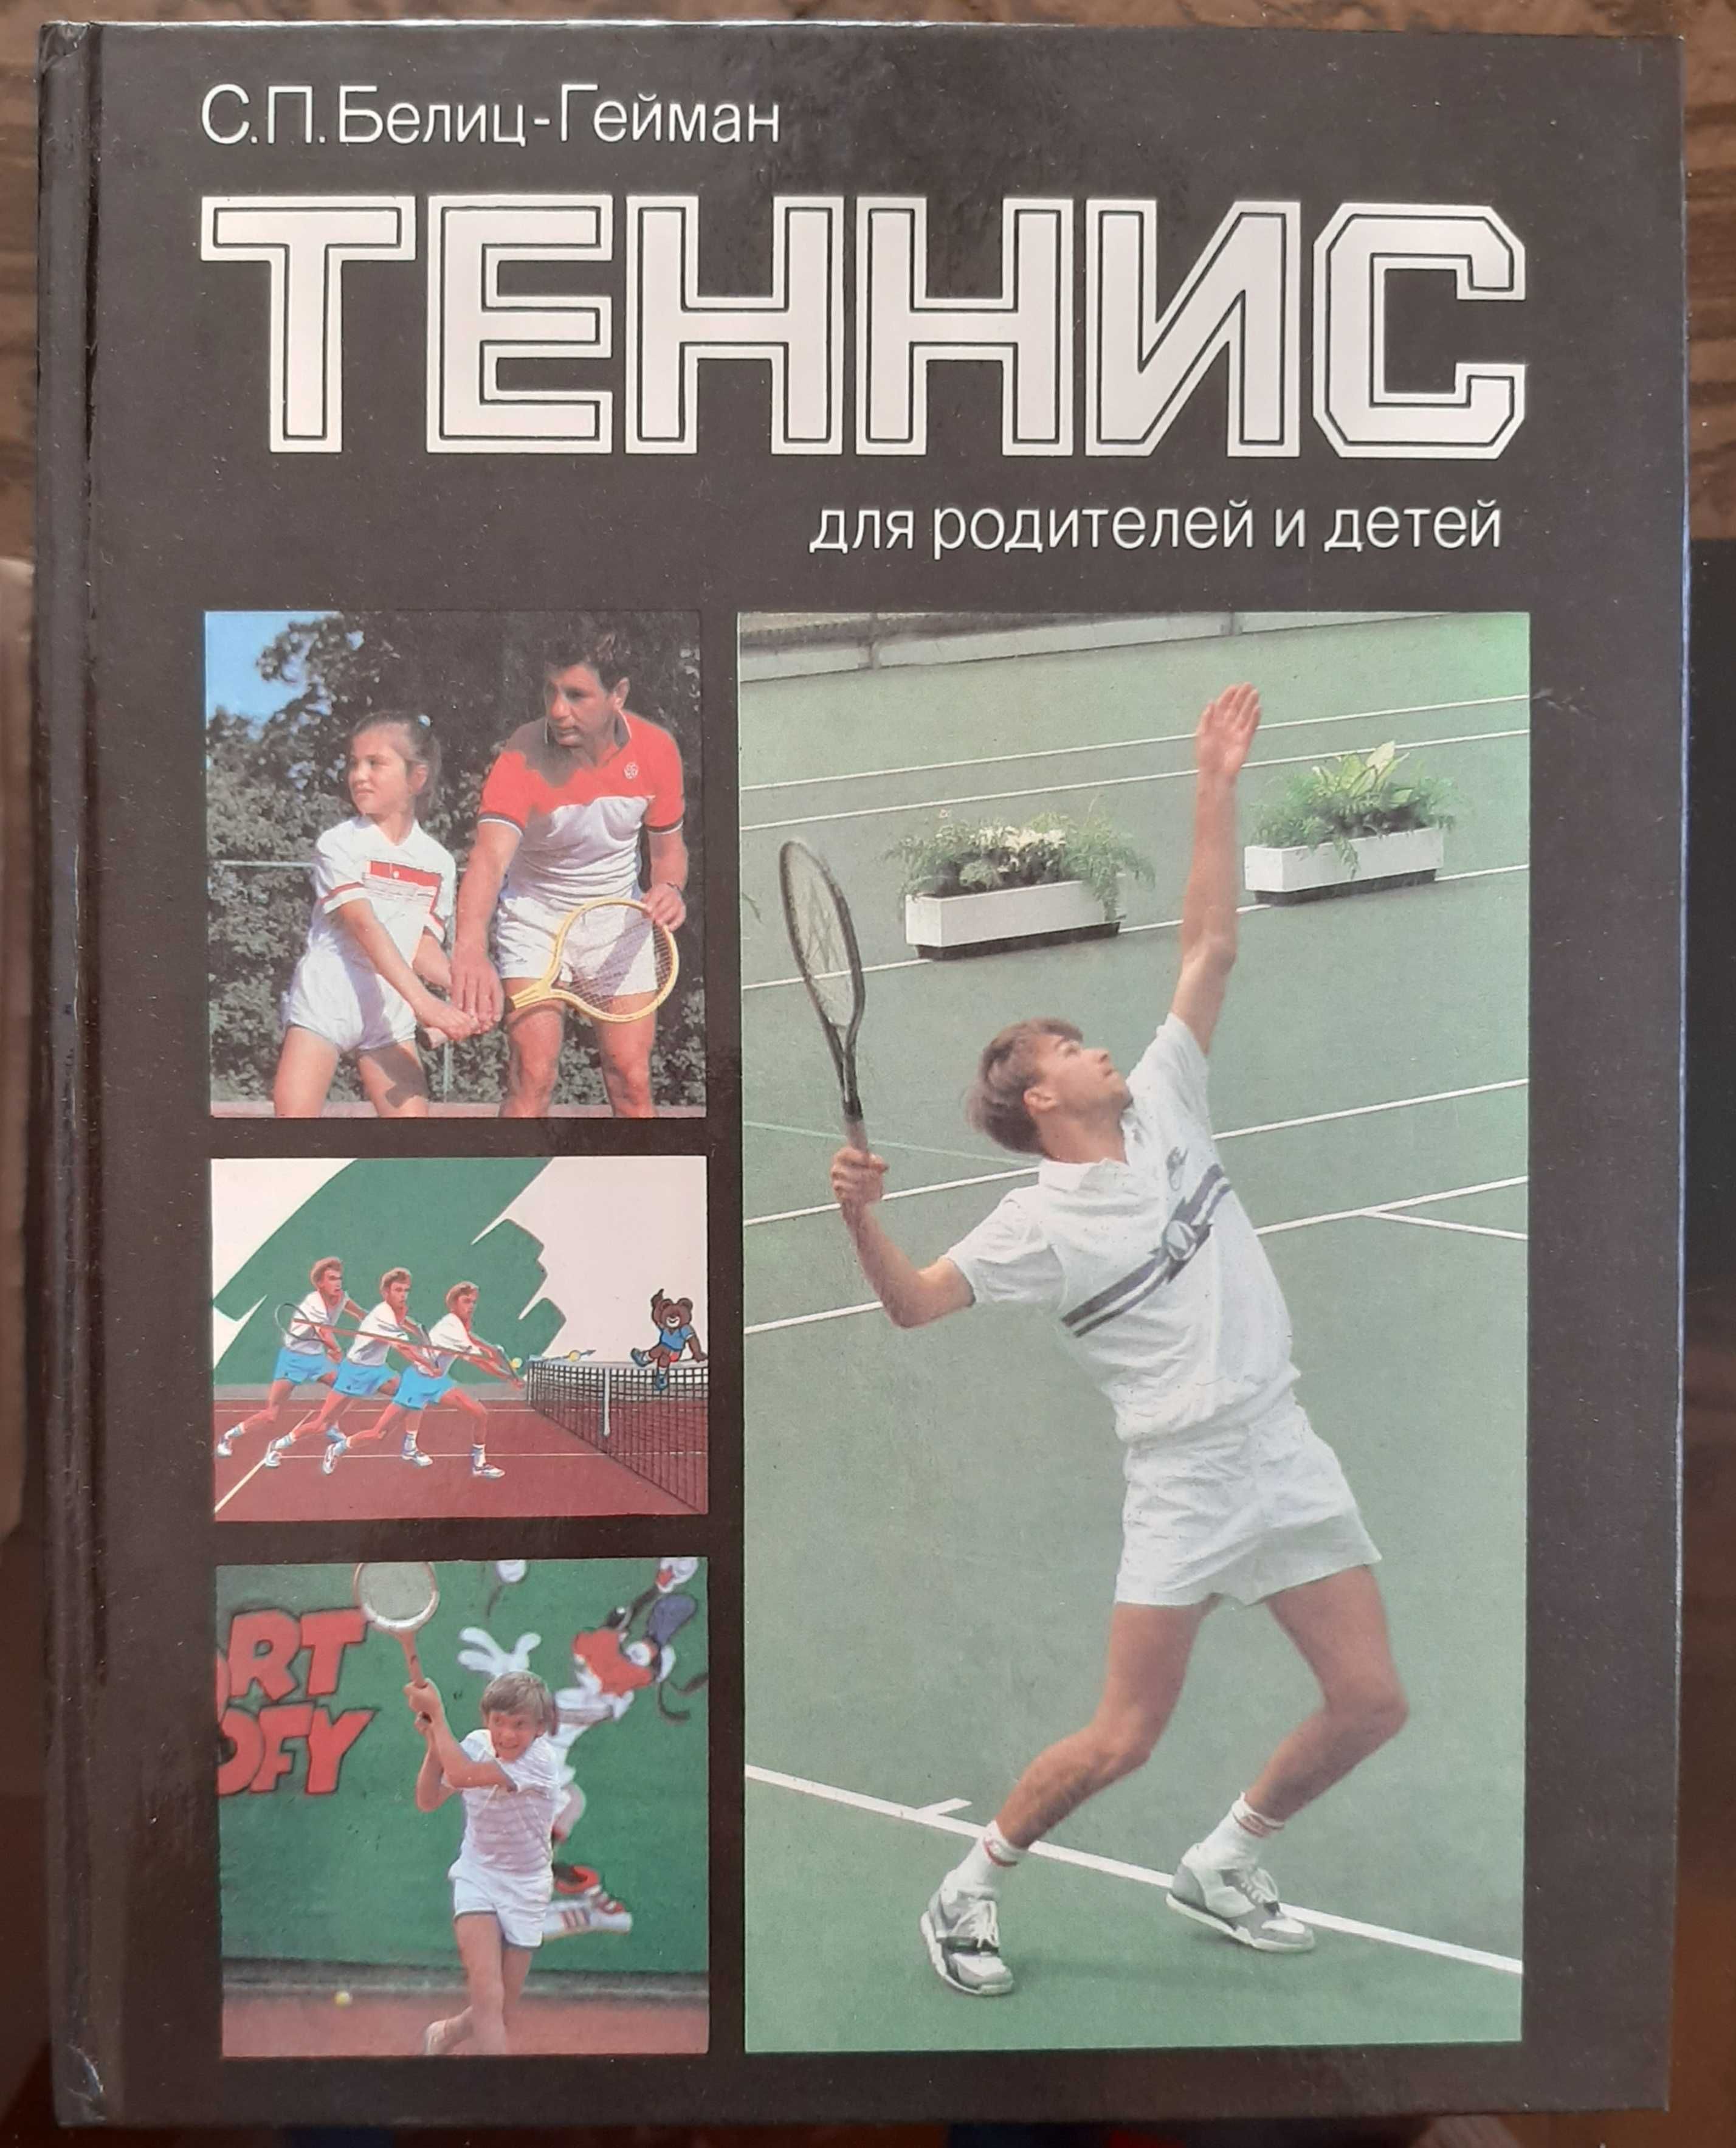 Книга Теннис для родителей и детей. С.П.Белиц-Гейман